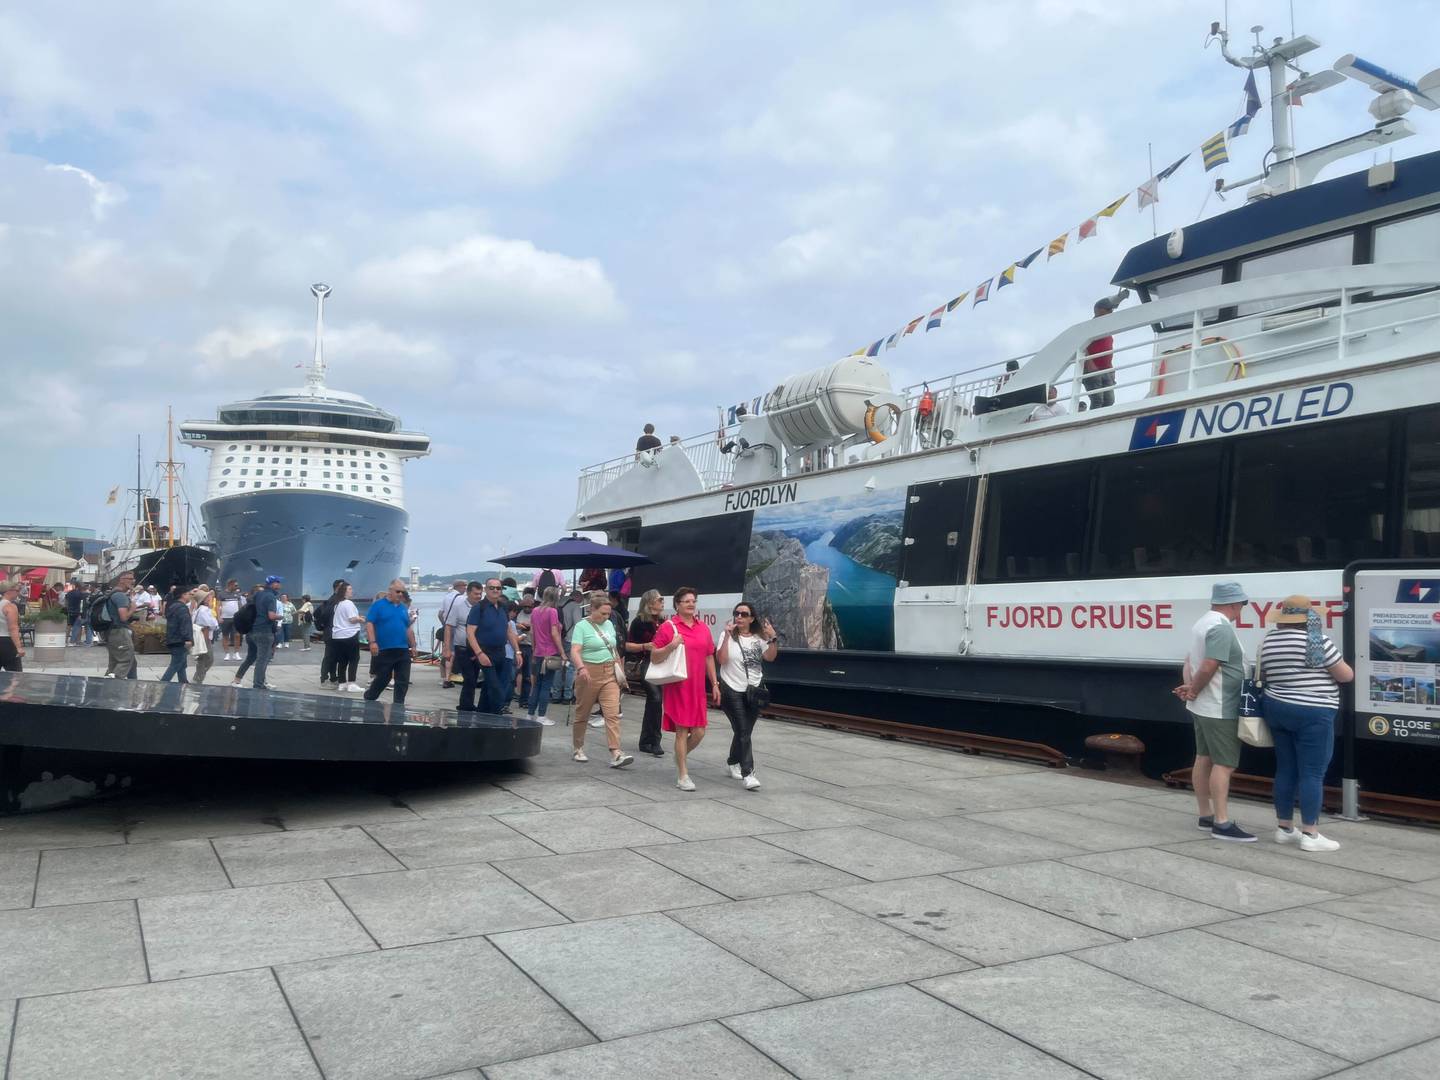 Norled arrangerer fjordcruise innover Lysefjorden for cruiseturistene som kommer til Stavanger